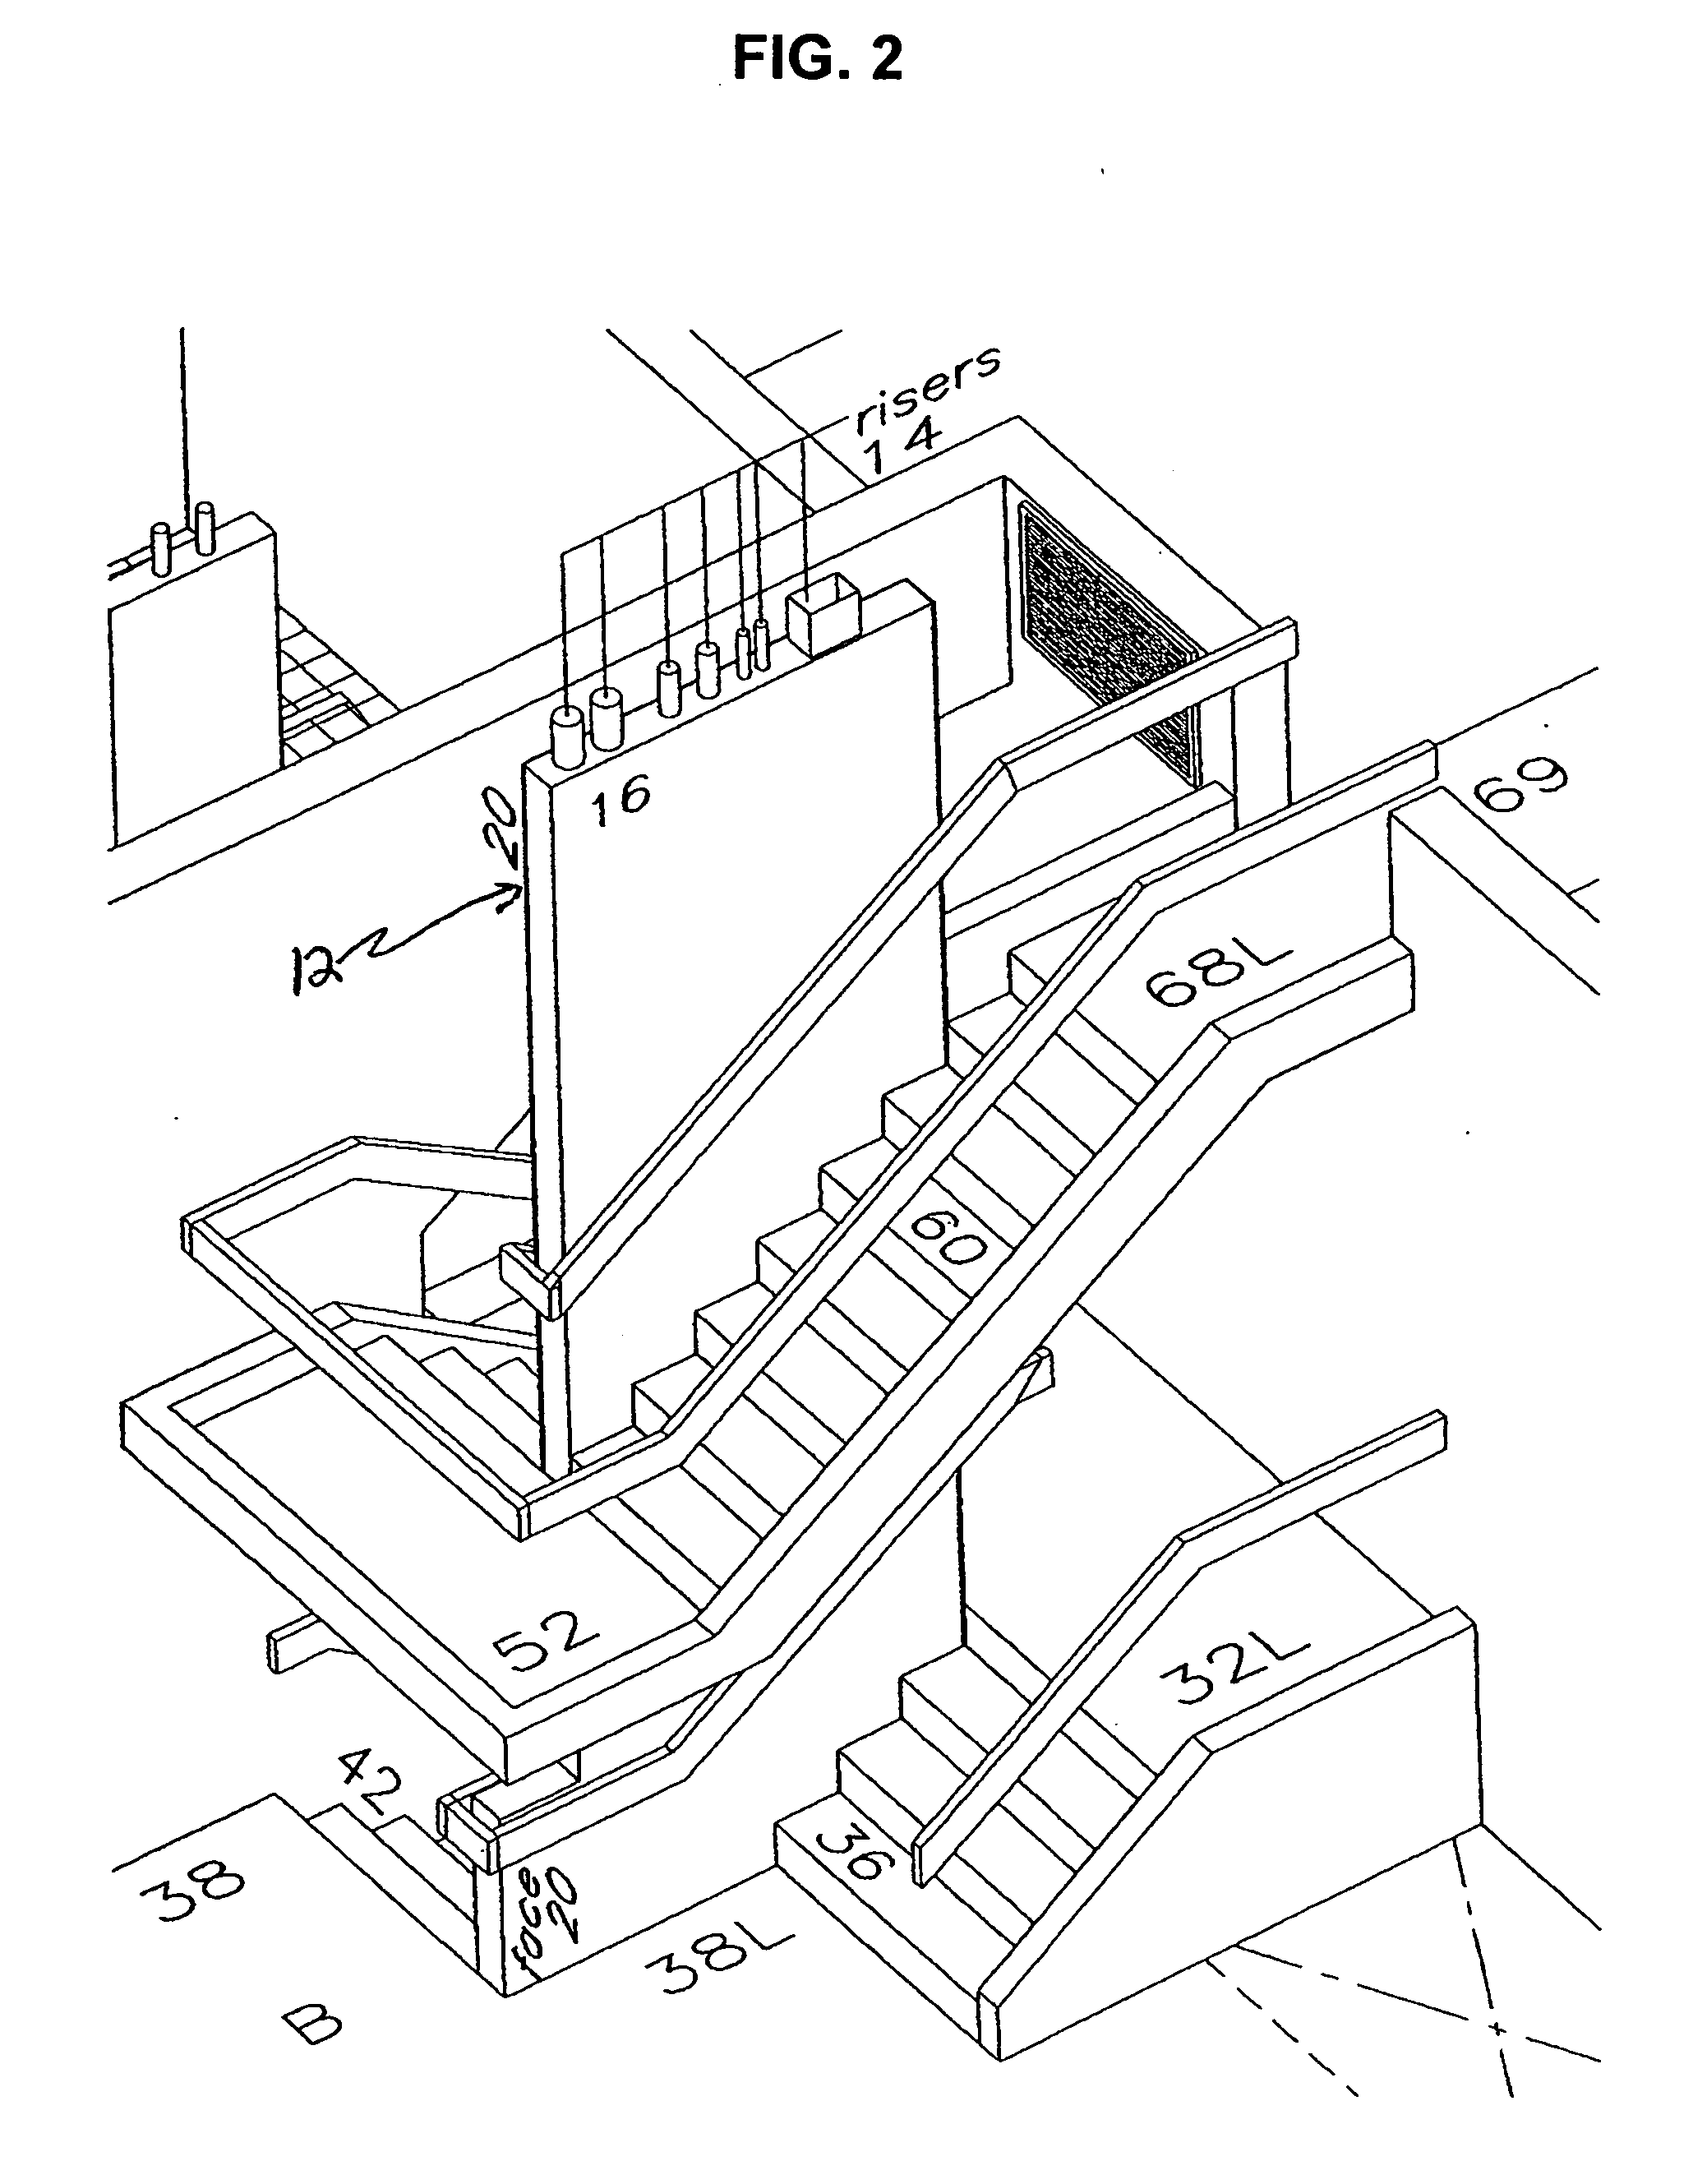 Multi-level apartment building